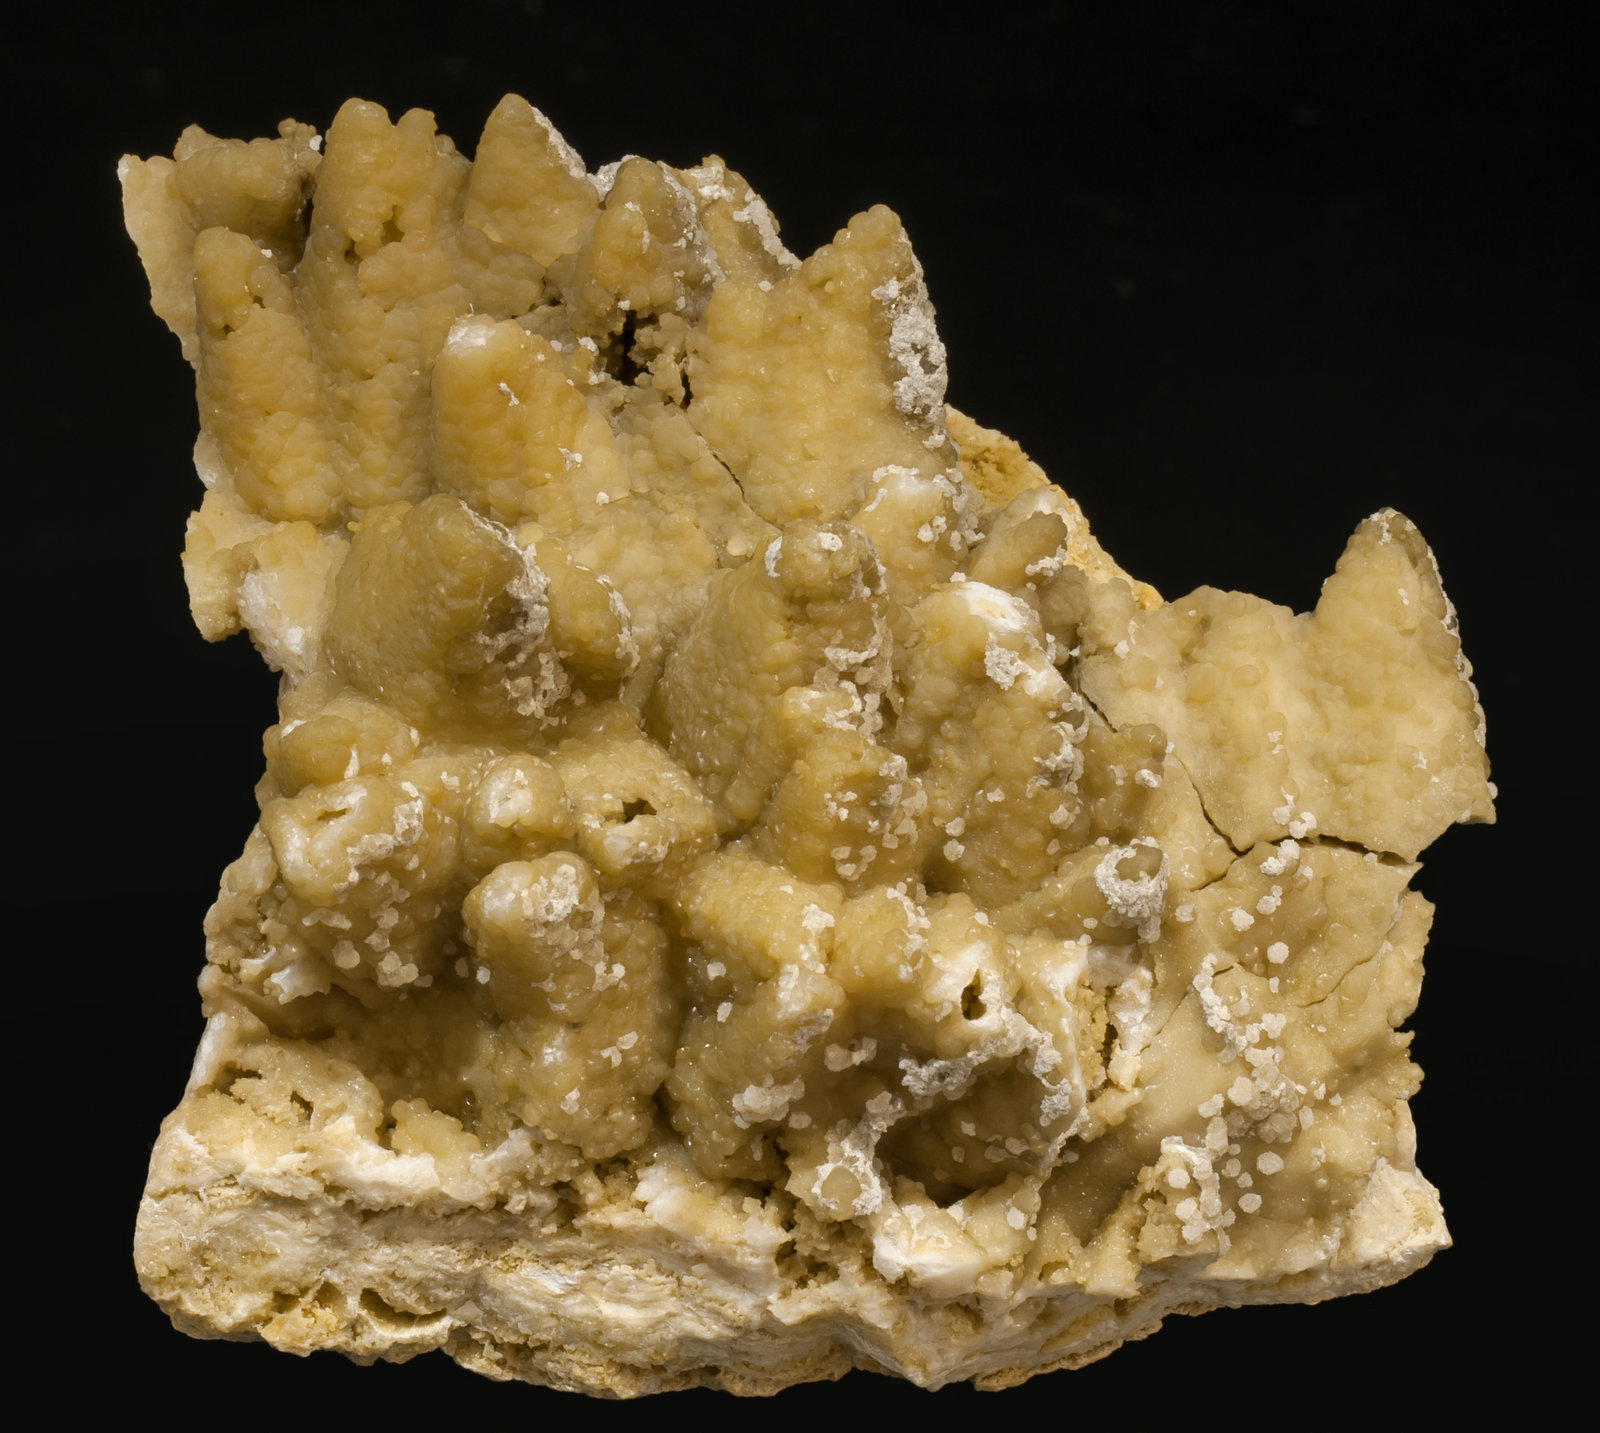 specimens/s_imagesAF0/Smithsonite-NG56AF0f.jpg